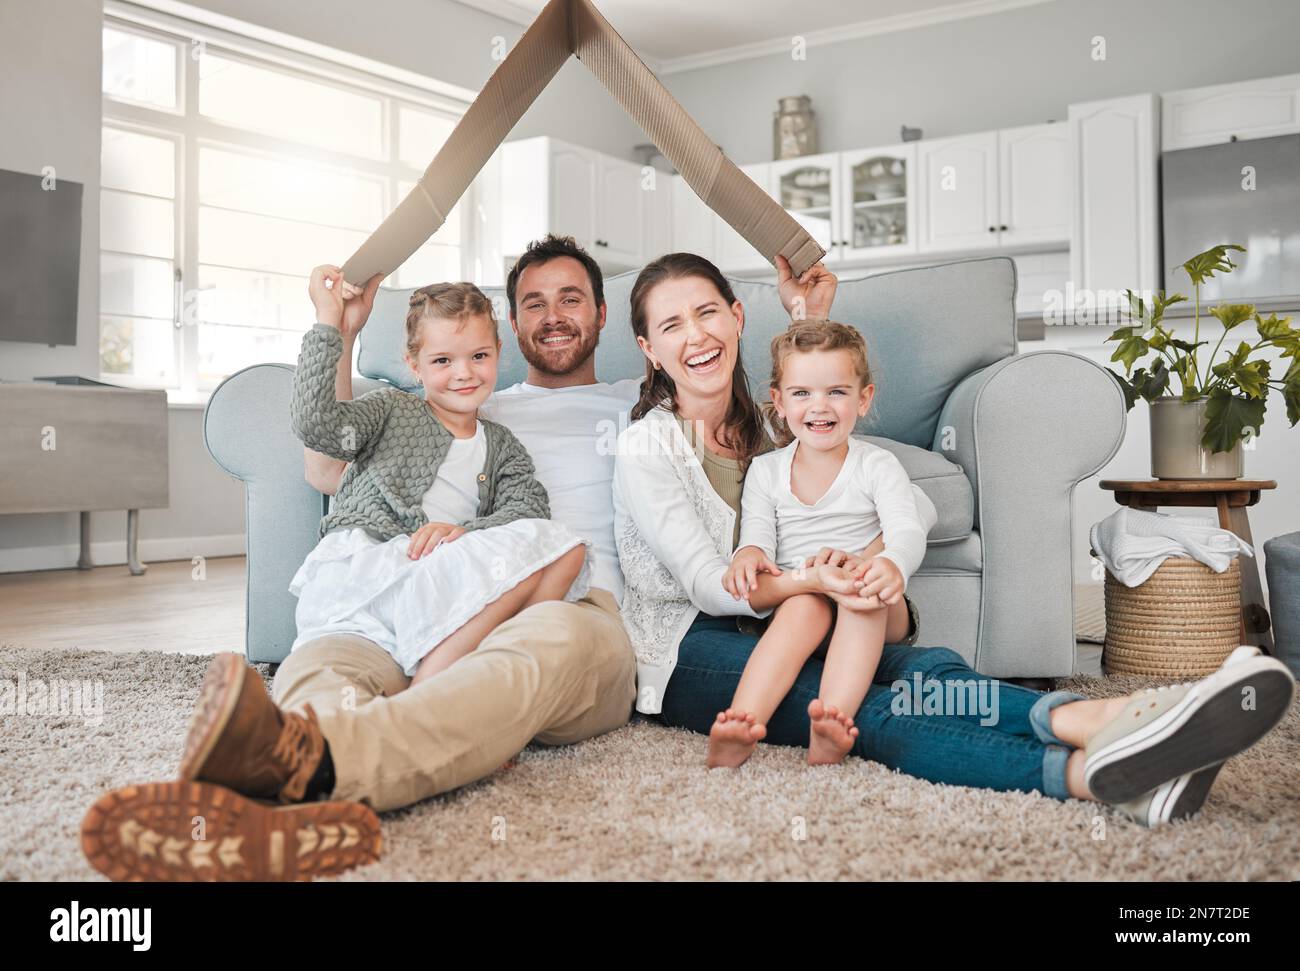 La maison est là où vous êtes aimés. Portrait d'une jeune famille assise sur le plancher du salon sous un fort en carton à la maison. Banque D'Images